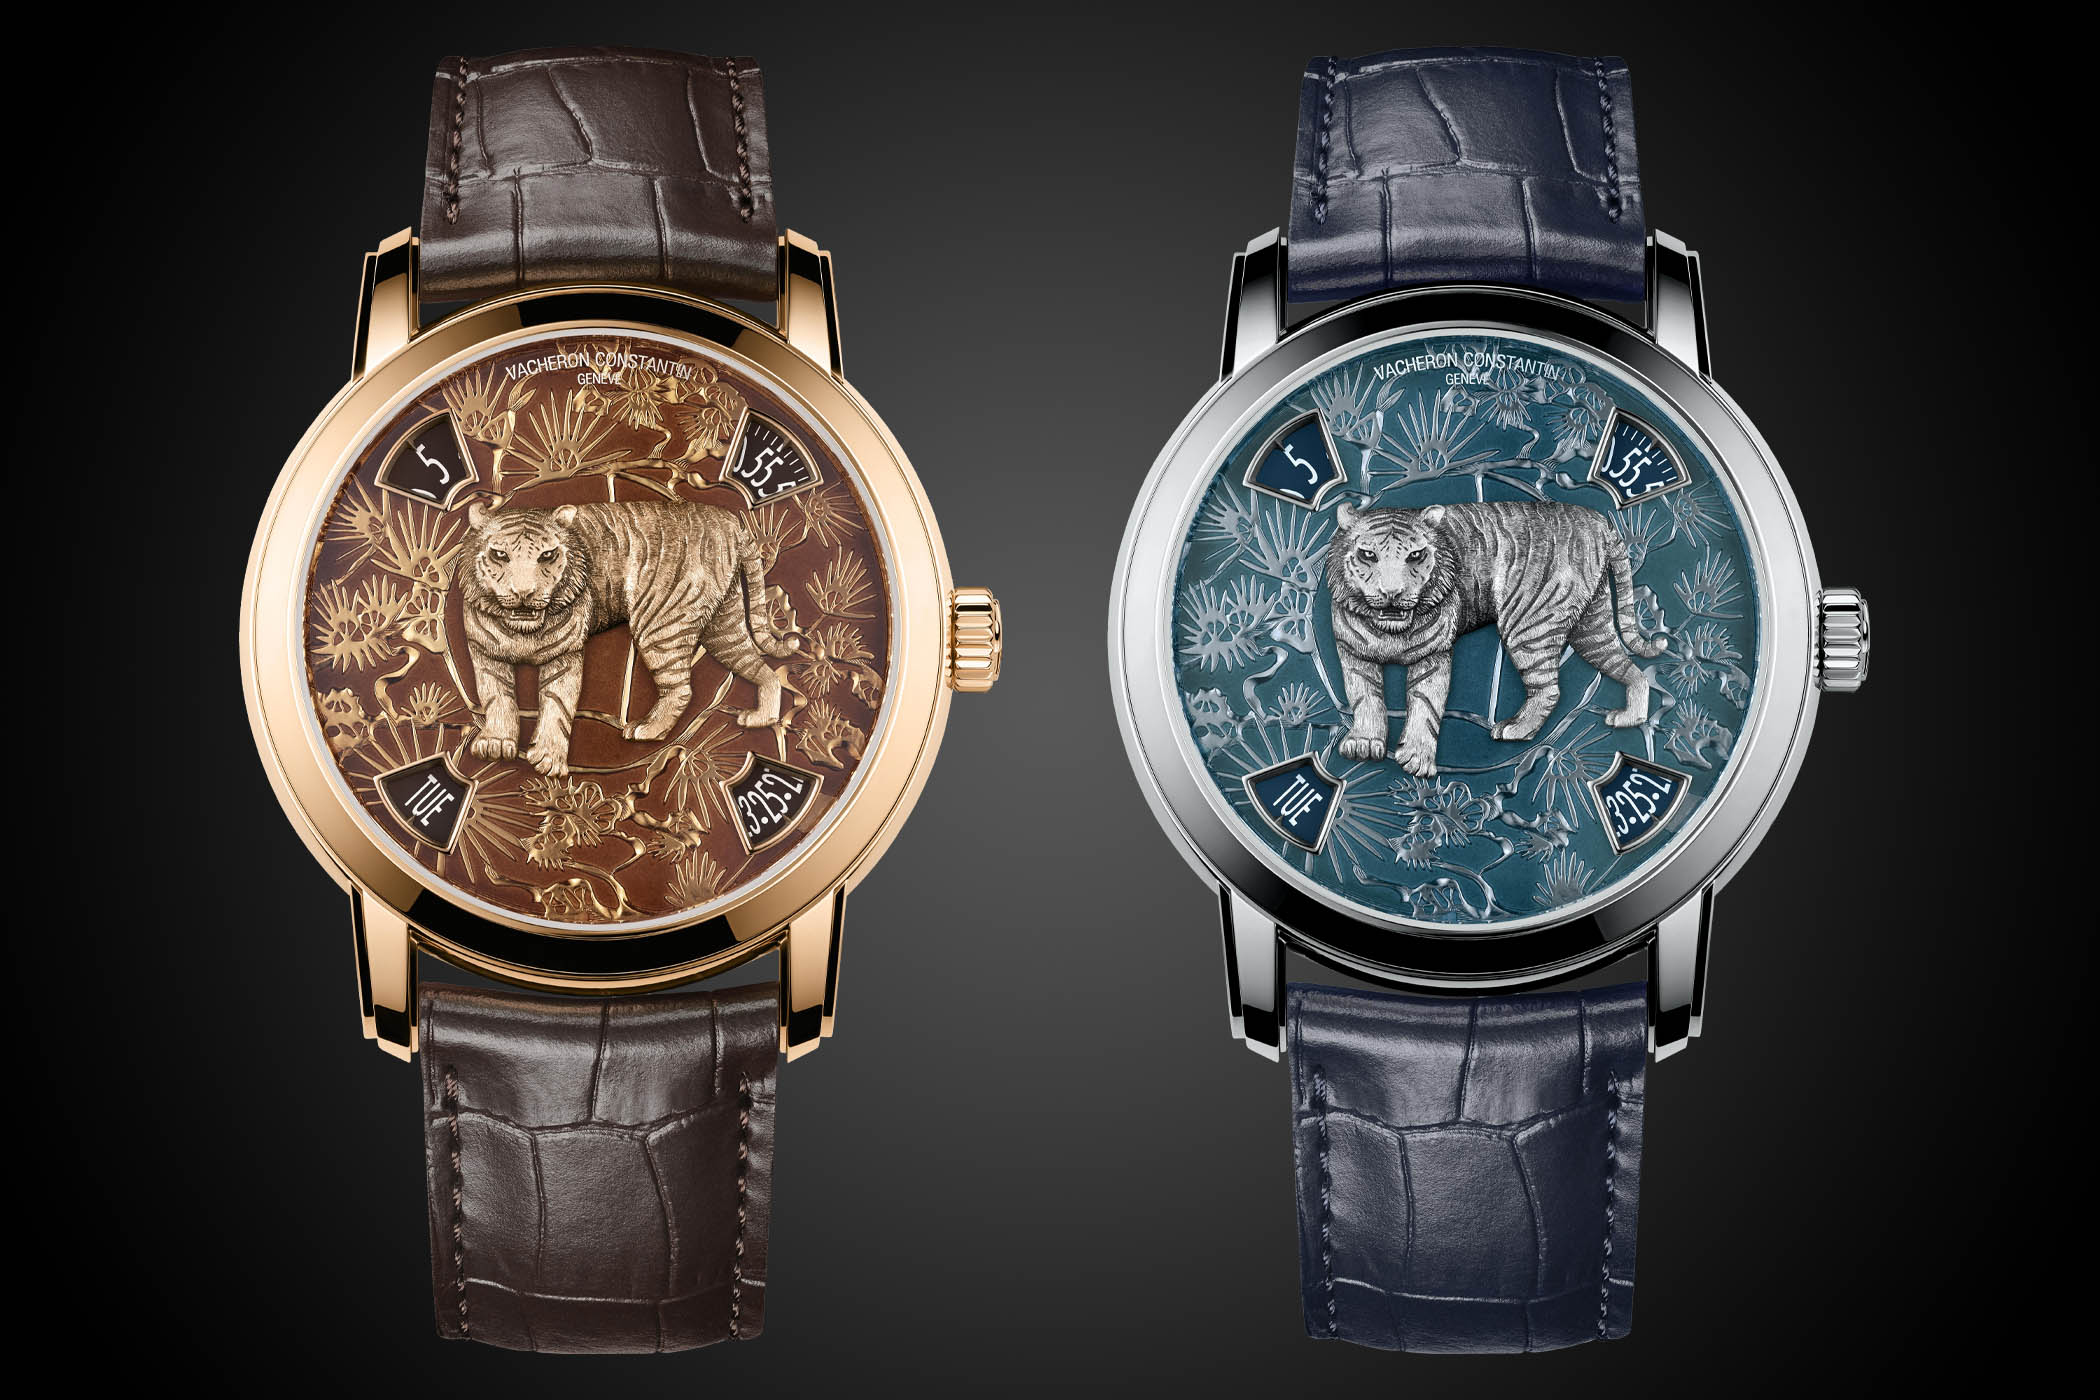 Vacheron Constantin chuẩn bị cho “Năm Dần” với chiếc đồng hồ mới Métiers d'Art The Legend of the Chinese Zodiac “Year of the Tiger”